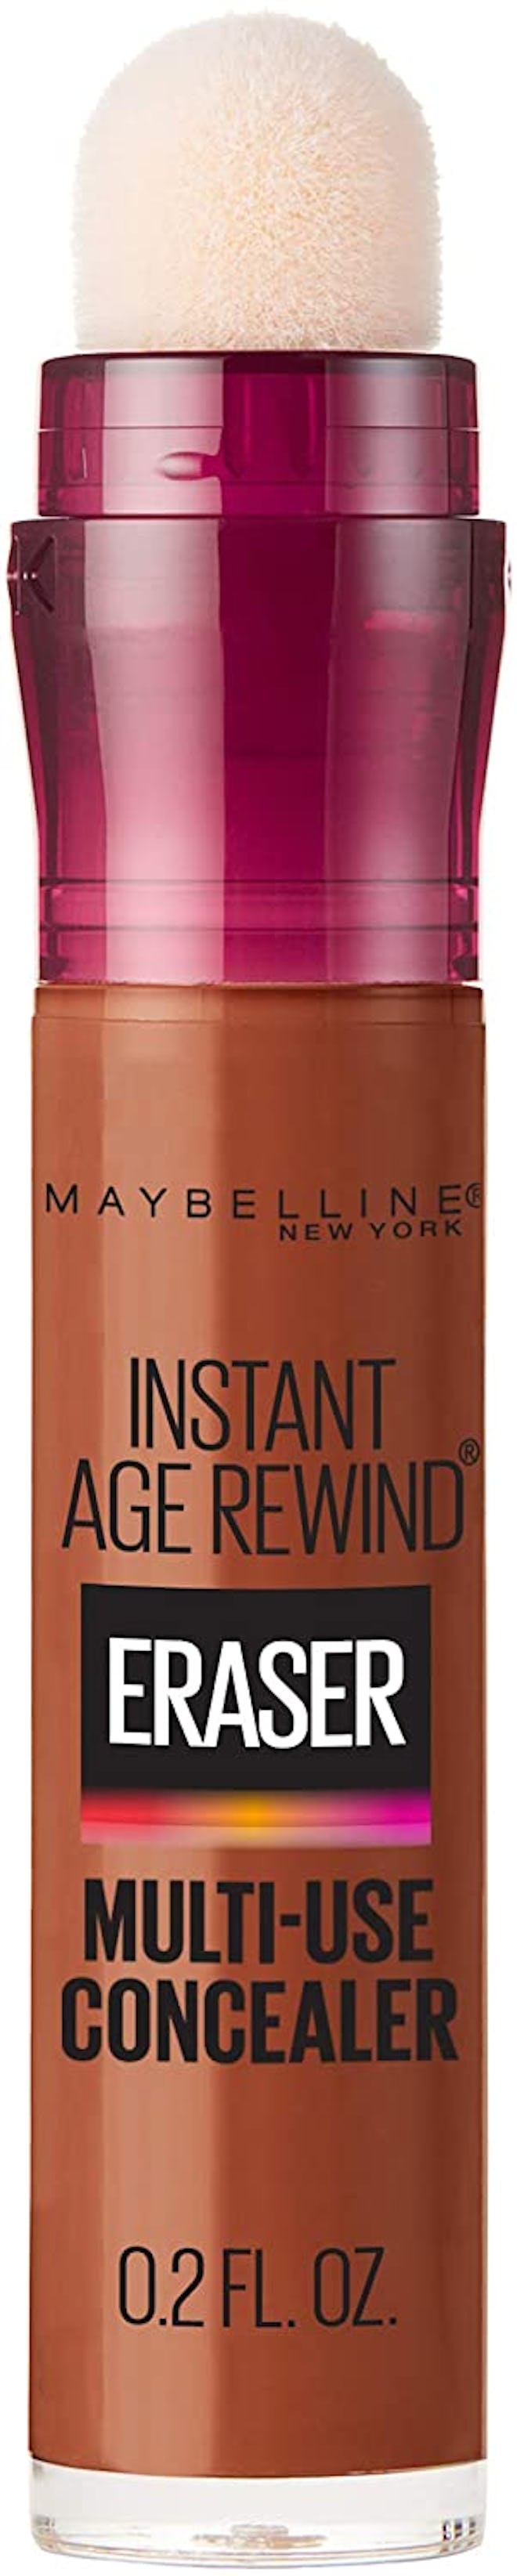 Maybelline New York Instant Age Rewind Eraser Multi-Use Concealer